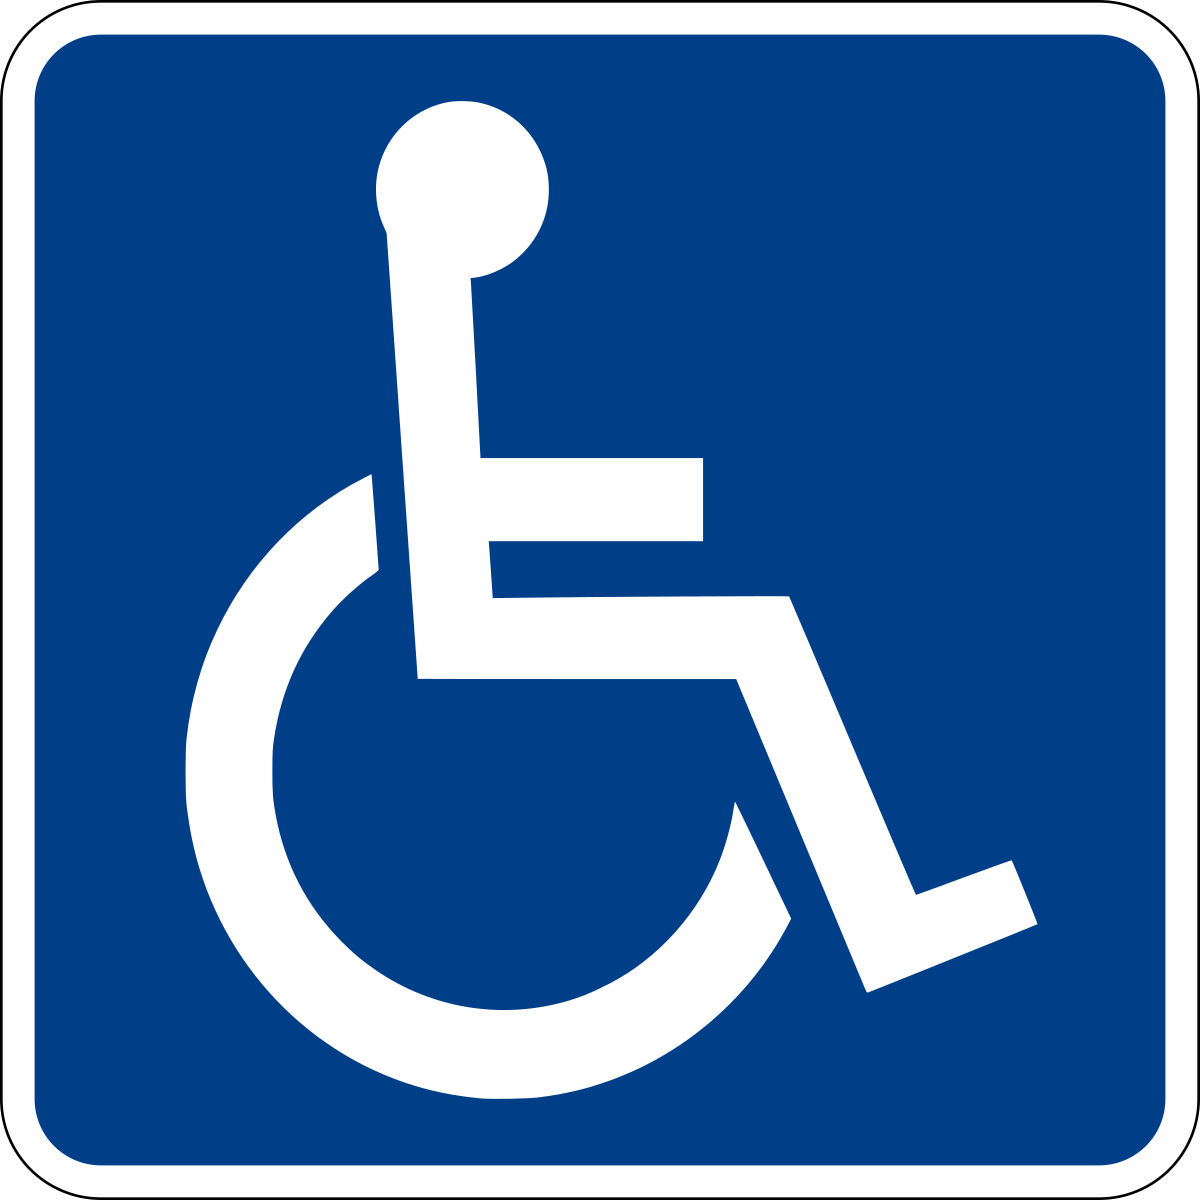 Un cartel azul con un icono blanco de una persona en silla de ruedas.